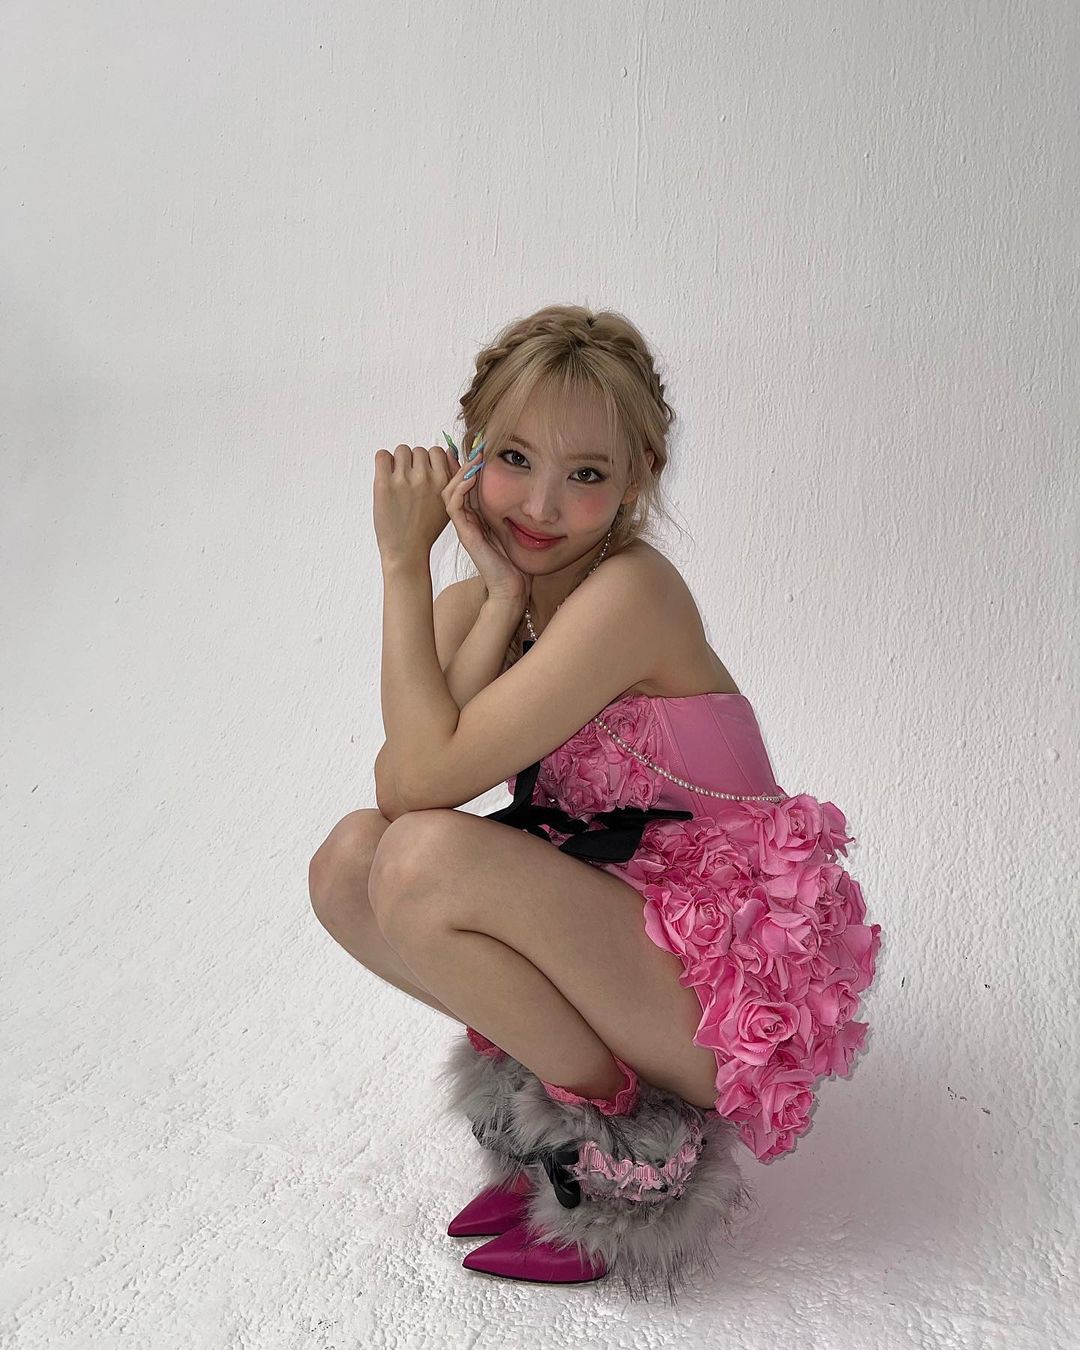 nayeon wearing flower dress